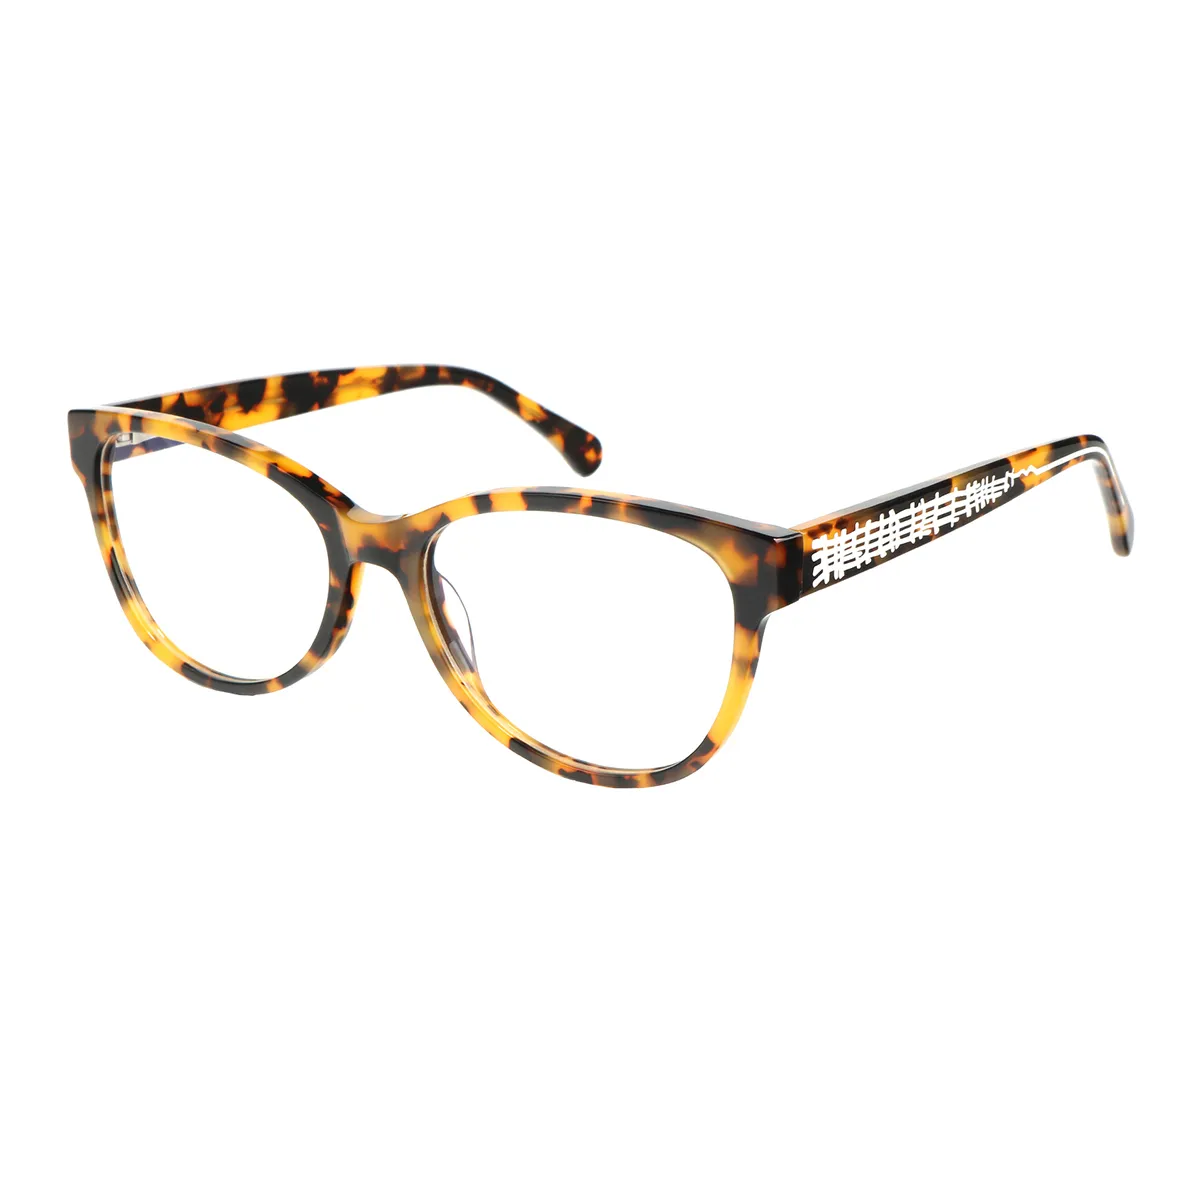 Ealex - Cat-eye Tortoiseshell Glasses for Women